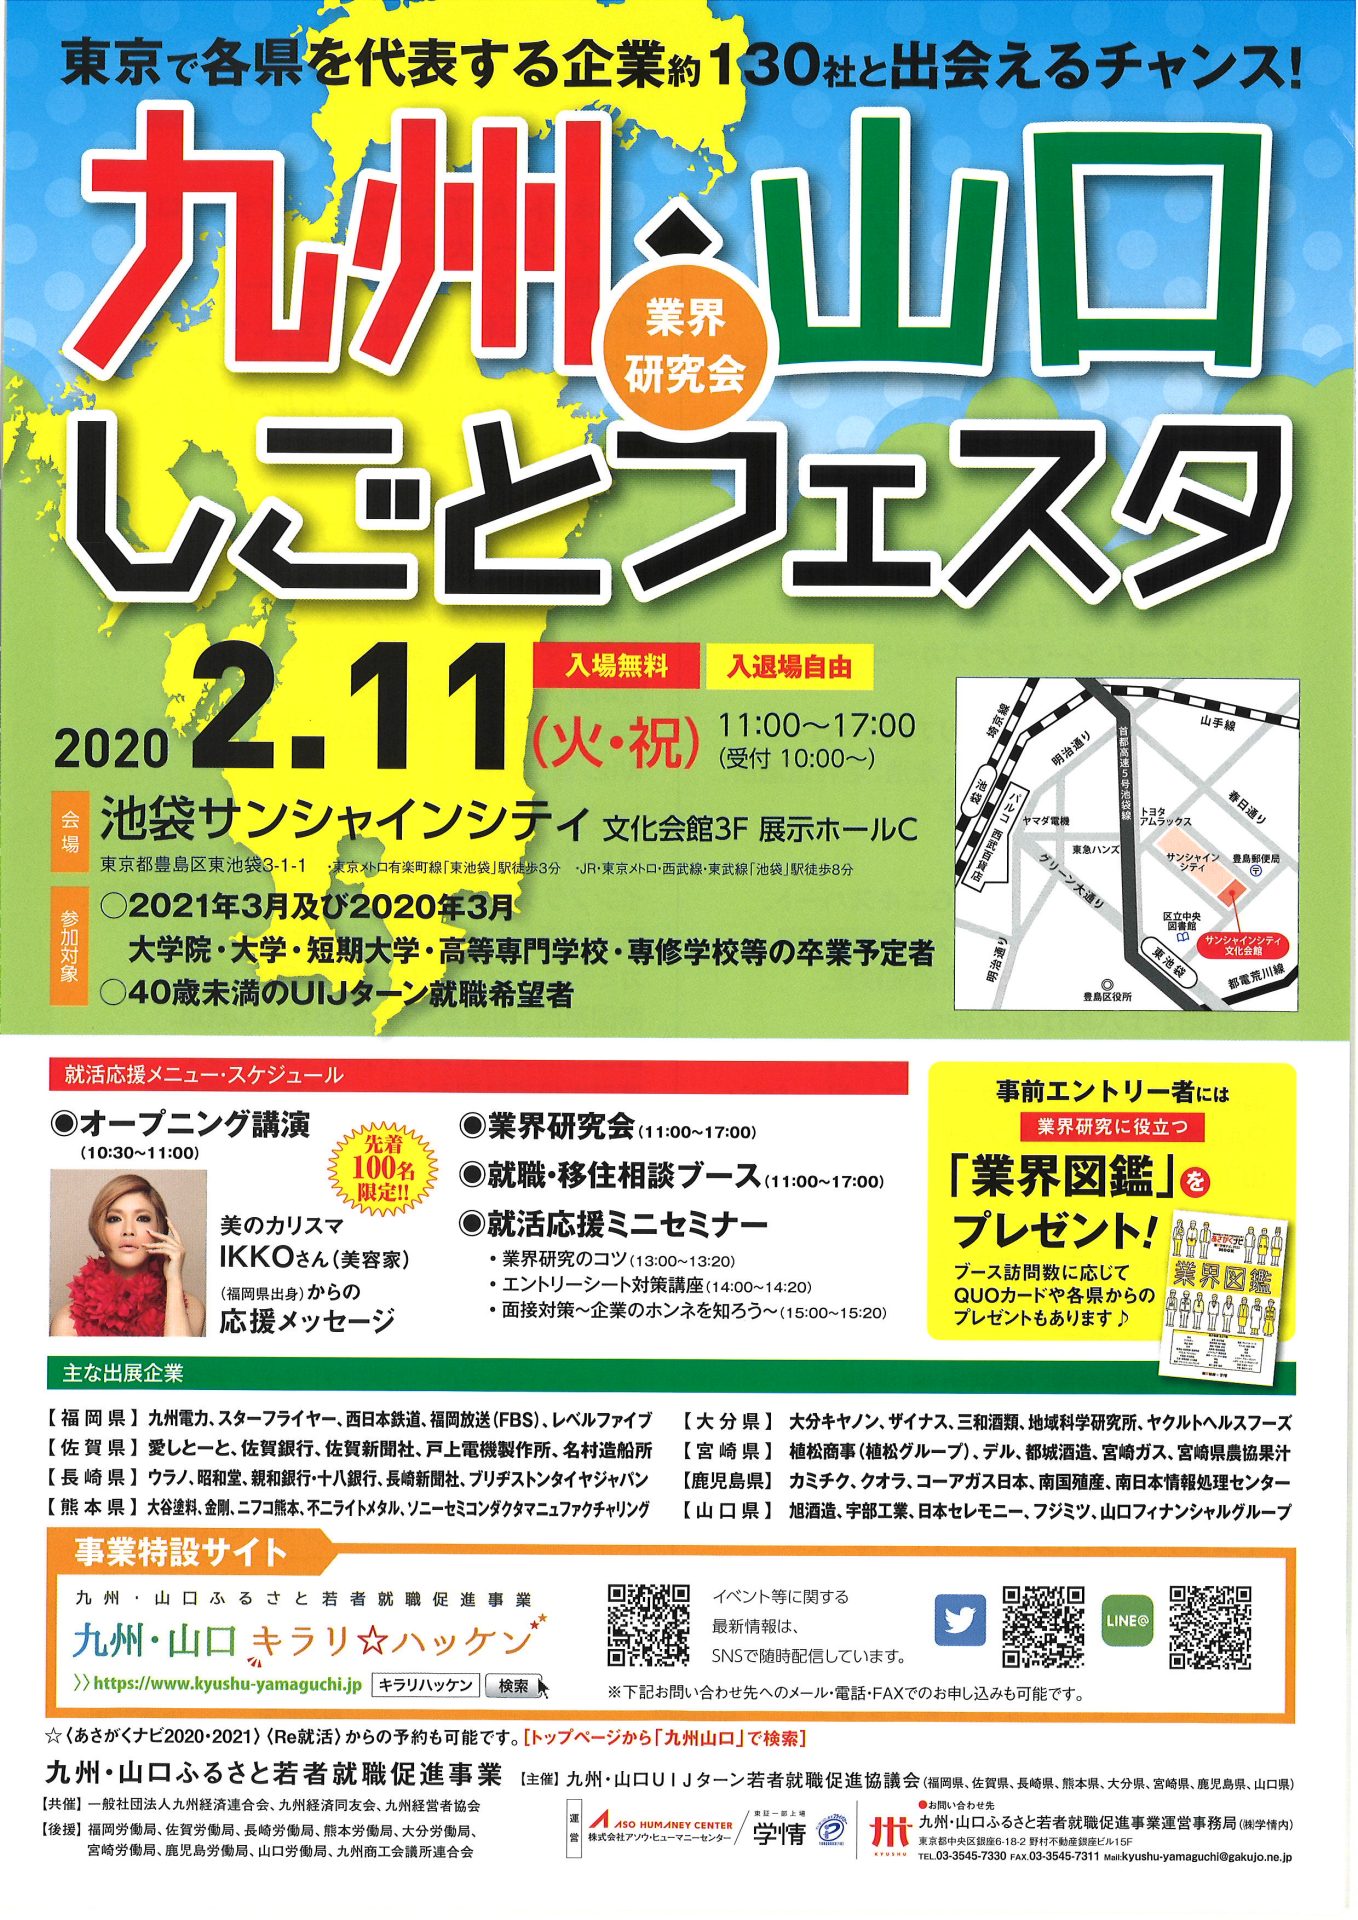 九州・山口しごとフェスタ | 移住関連イベント情報